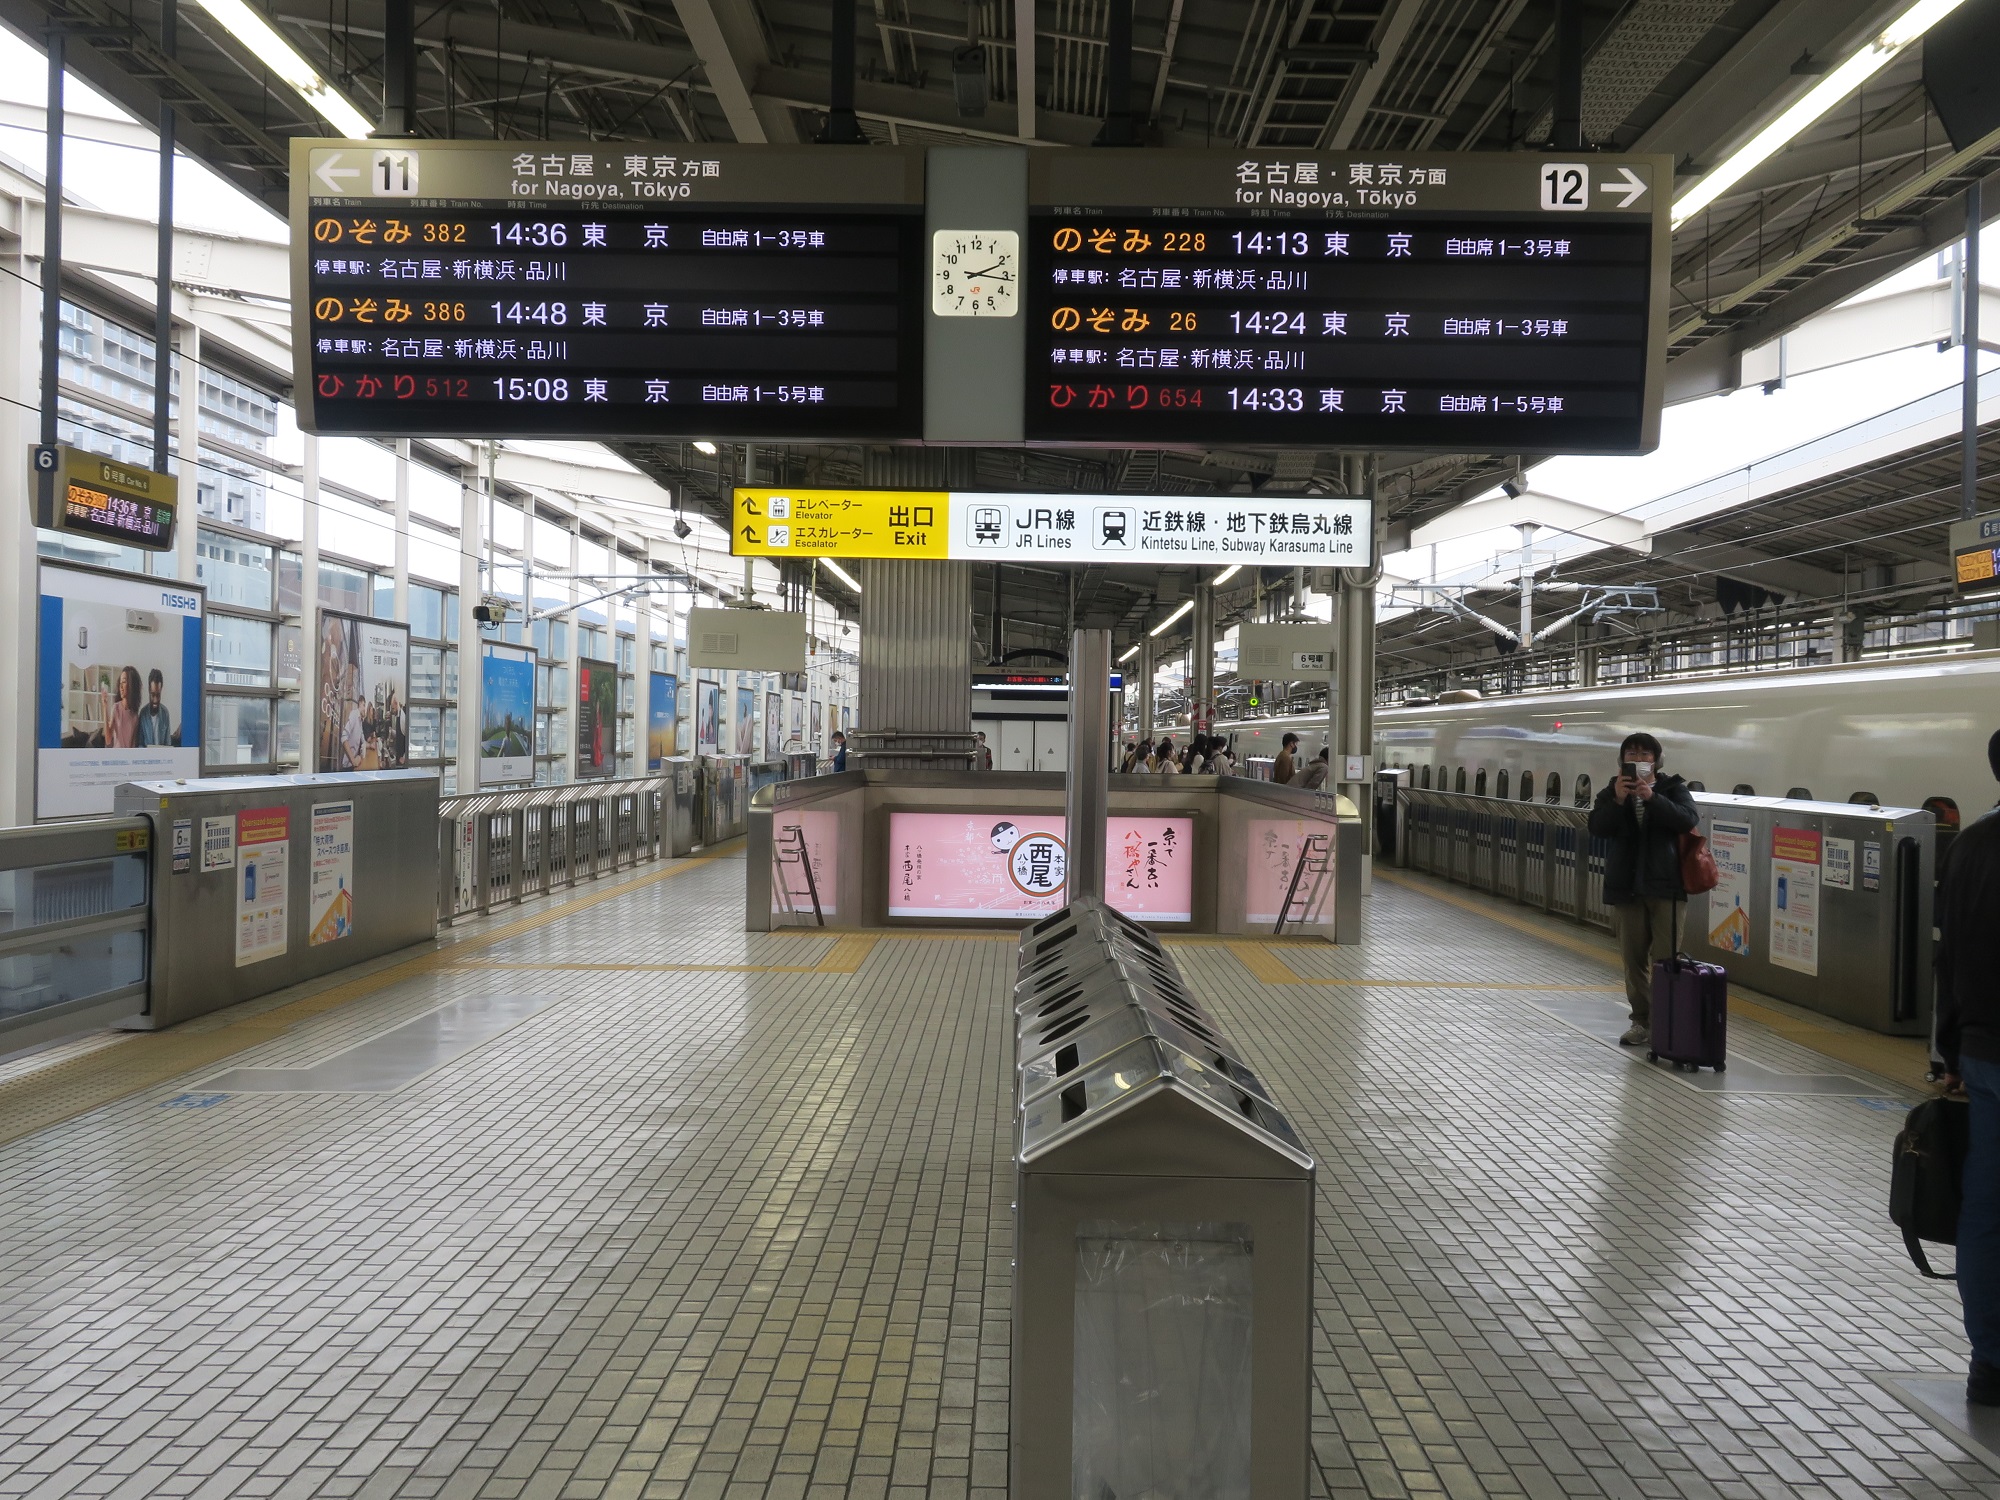 JR東海道新幹線 京都駅 11番線・12番線 東海道新幹線で名古屋・新横浜・東京方面に行く列車が発着します